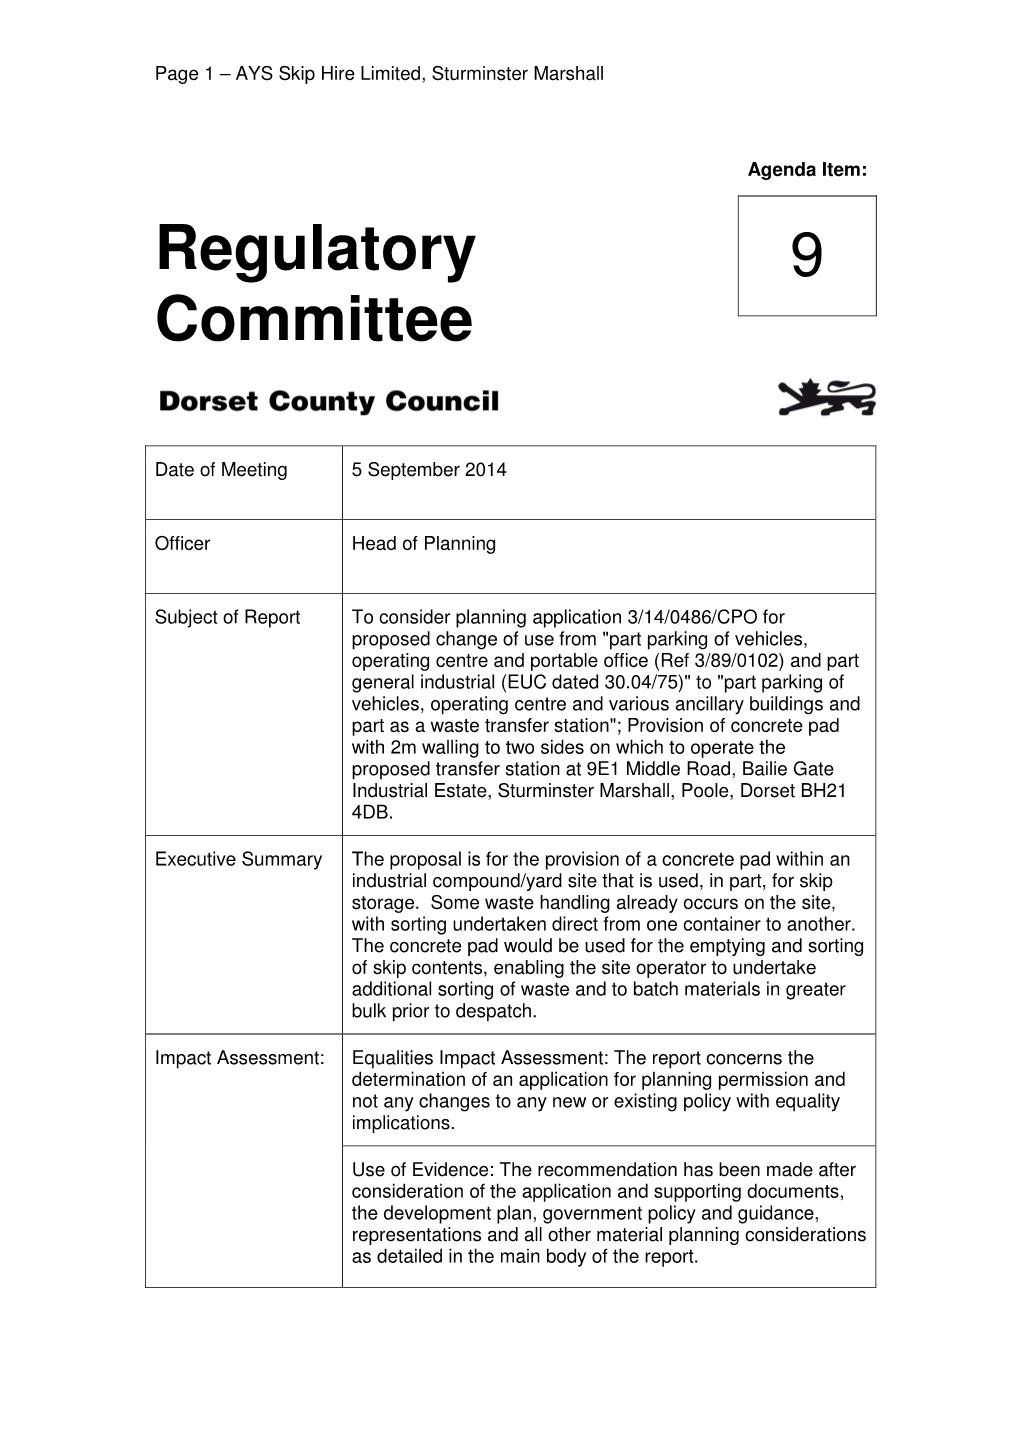 Regulatory Committee 9